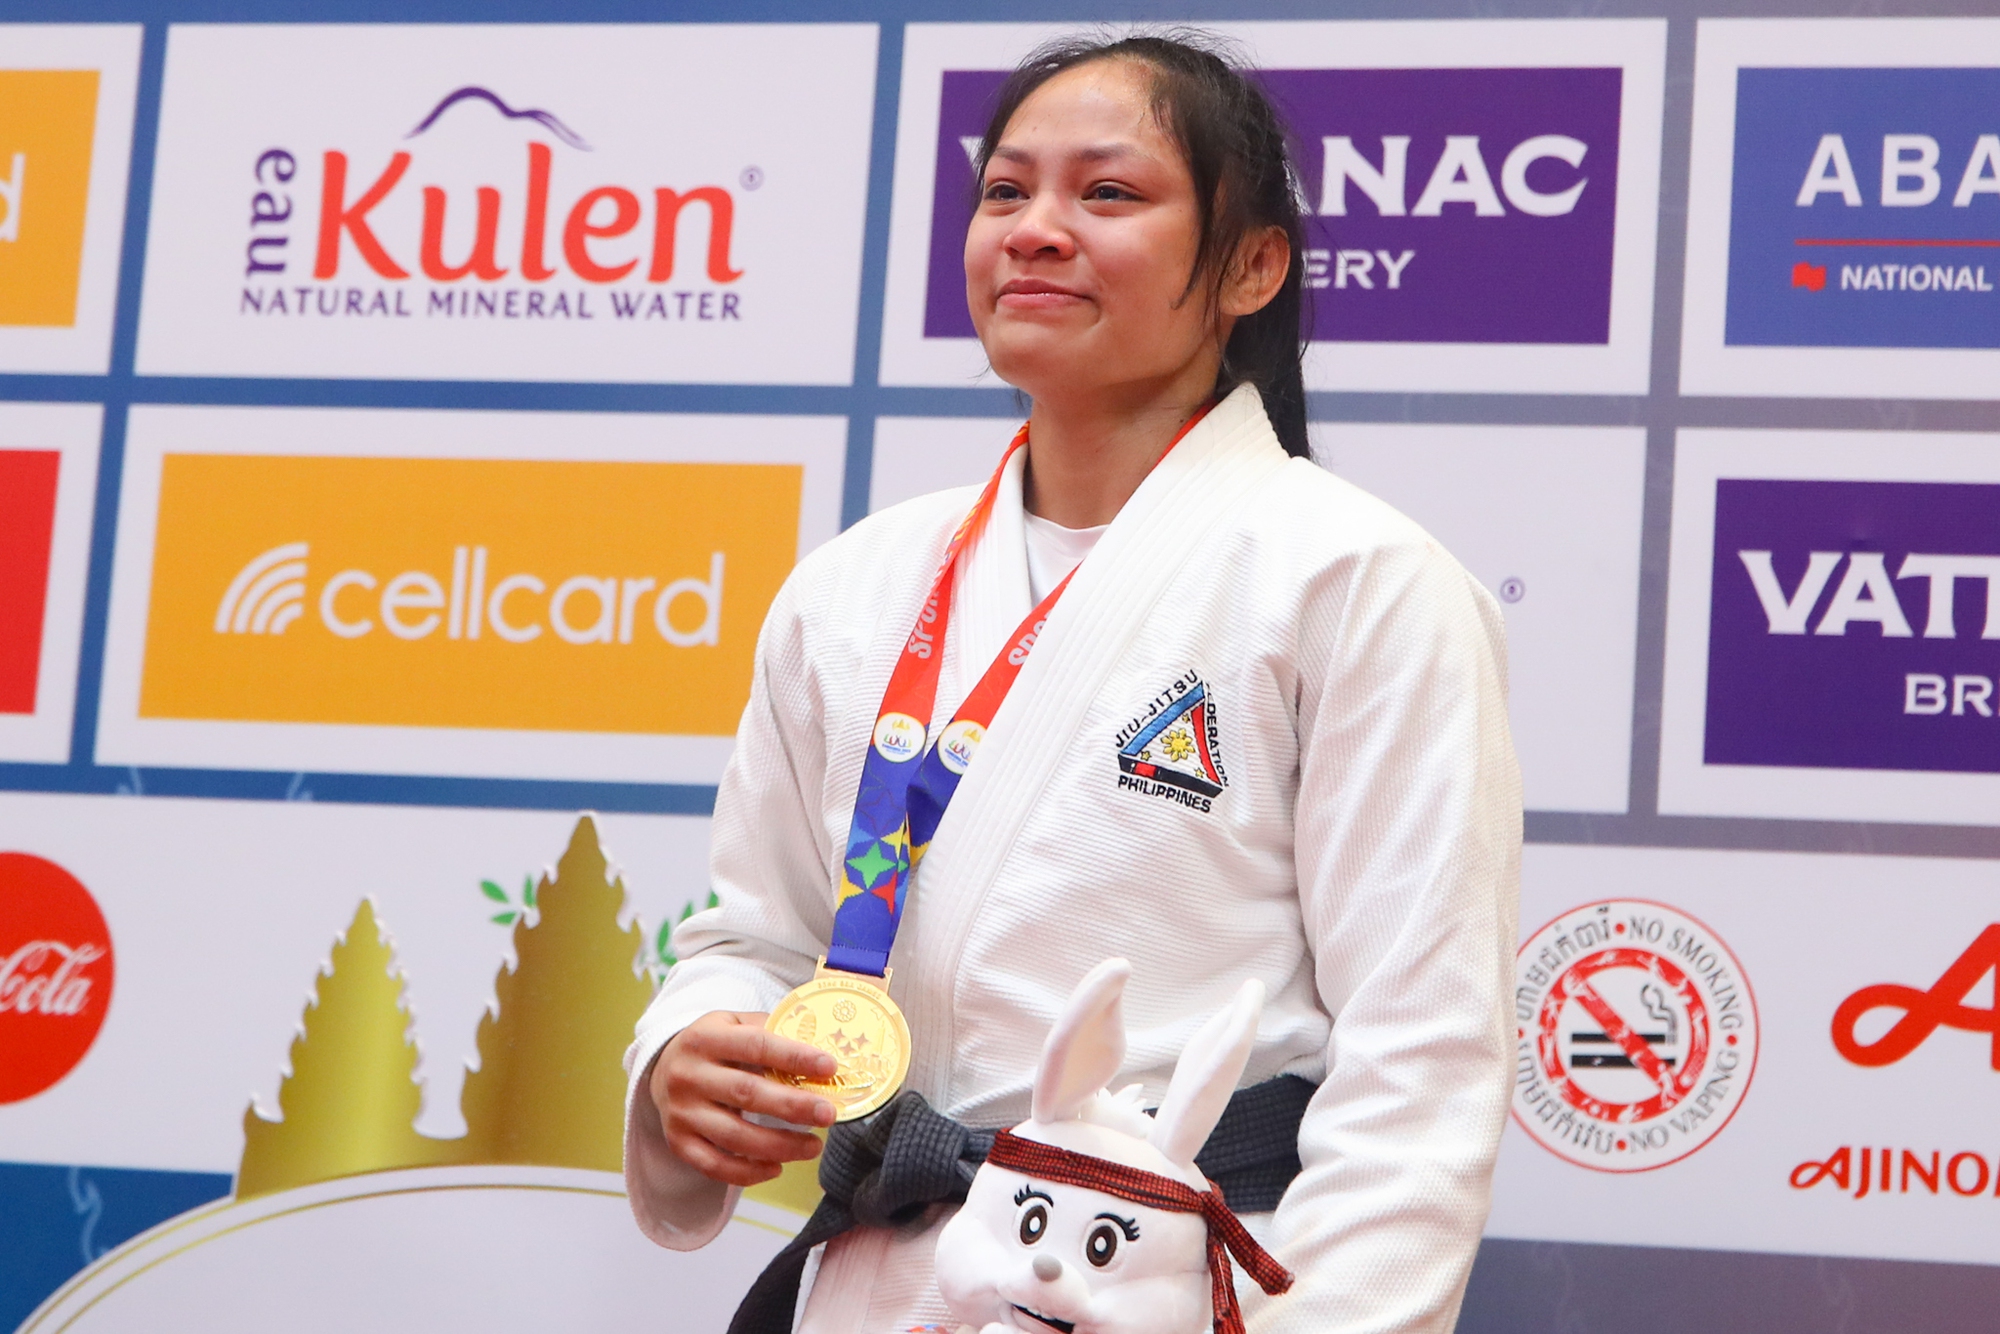 Bất ngờ thắng &quot;biểu tượng&quot; jujitsu Campuchia, nữ võ sĩ Philippines bật khóc trên bục nhận huy chương - Ảnh 7.